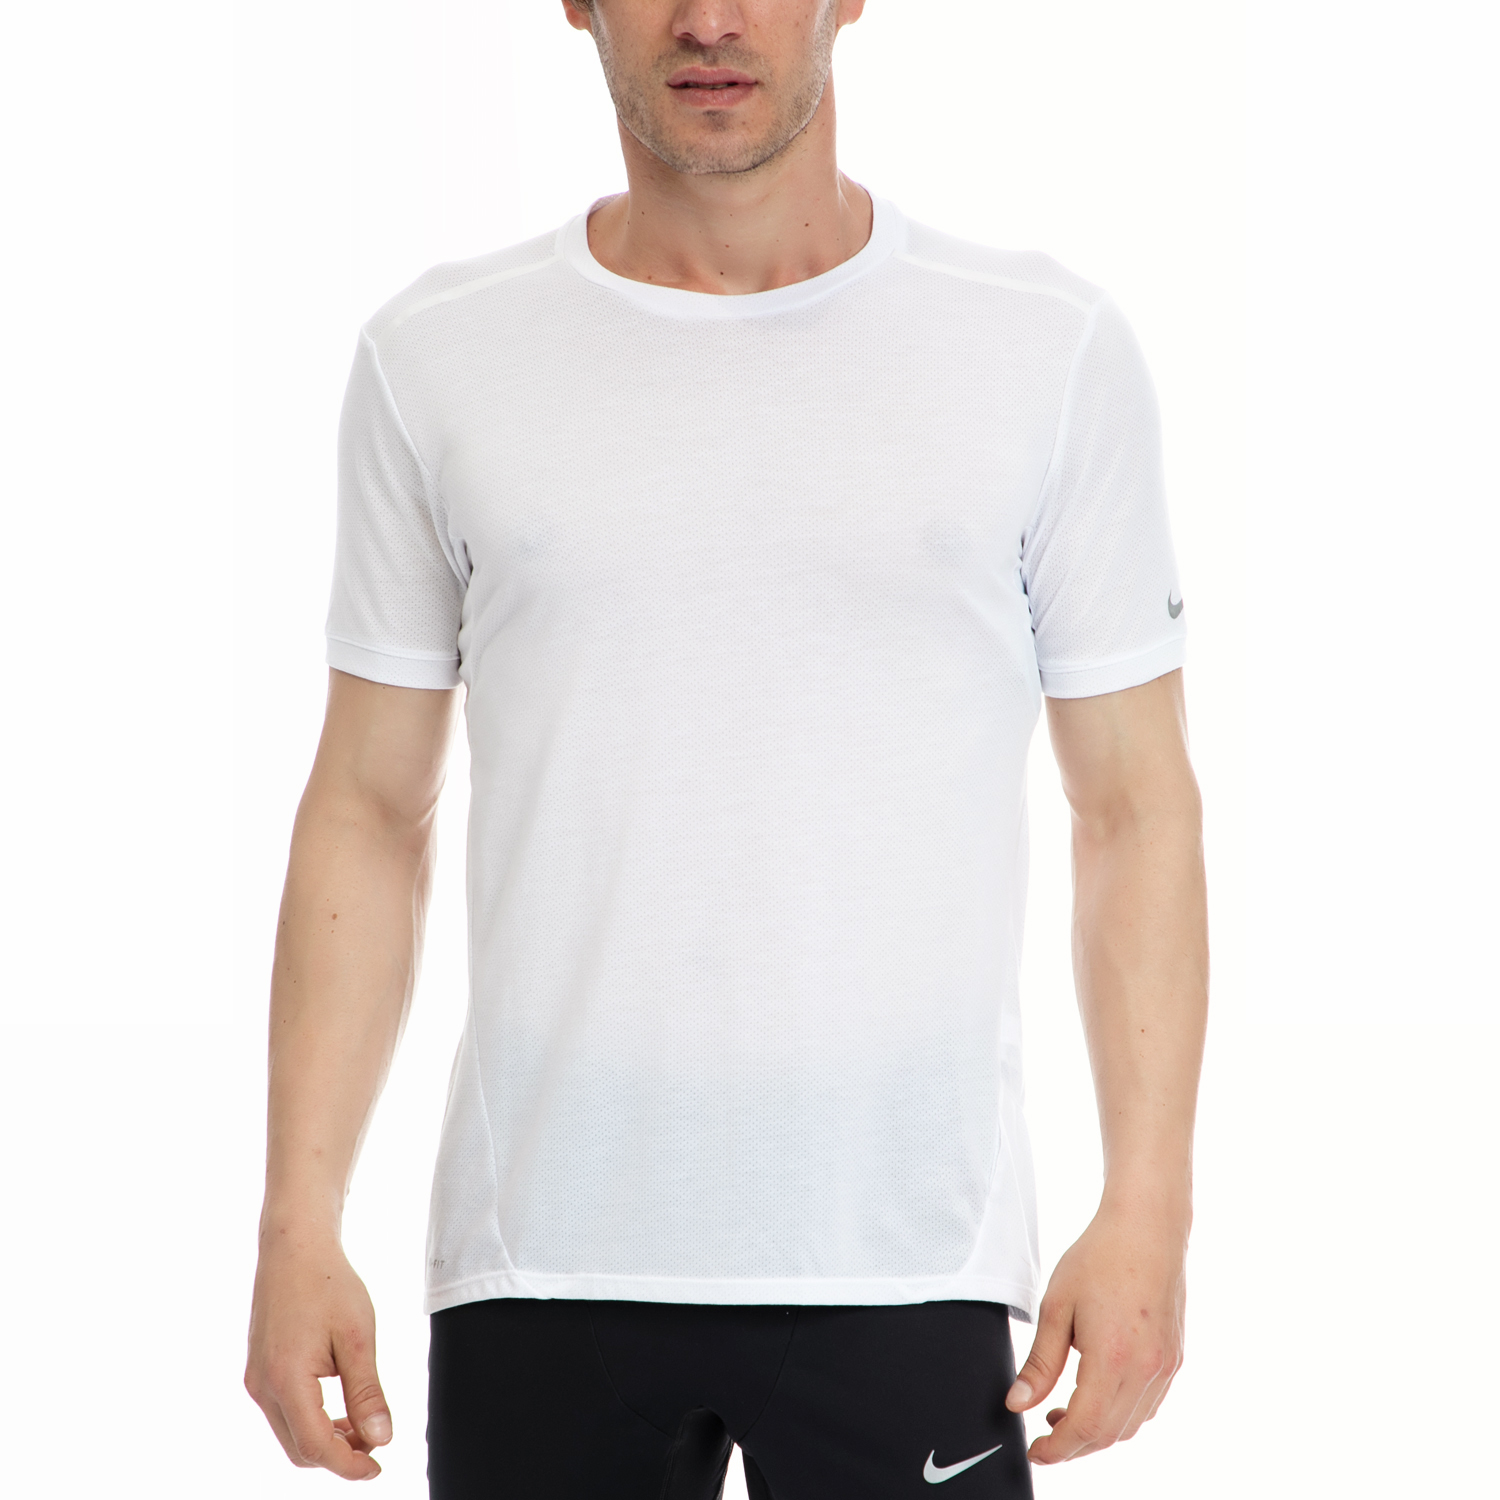 Ανδρικά/Ρούχα/Αθλητικά/T-shirt NIKE - Αντρική μπλούζα NIKE άσπρη